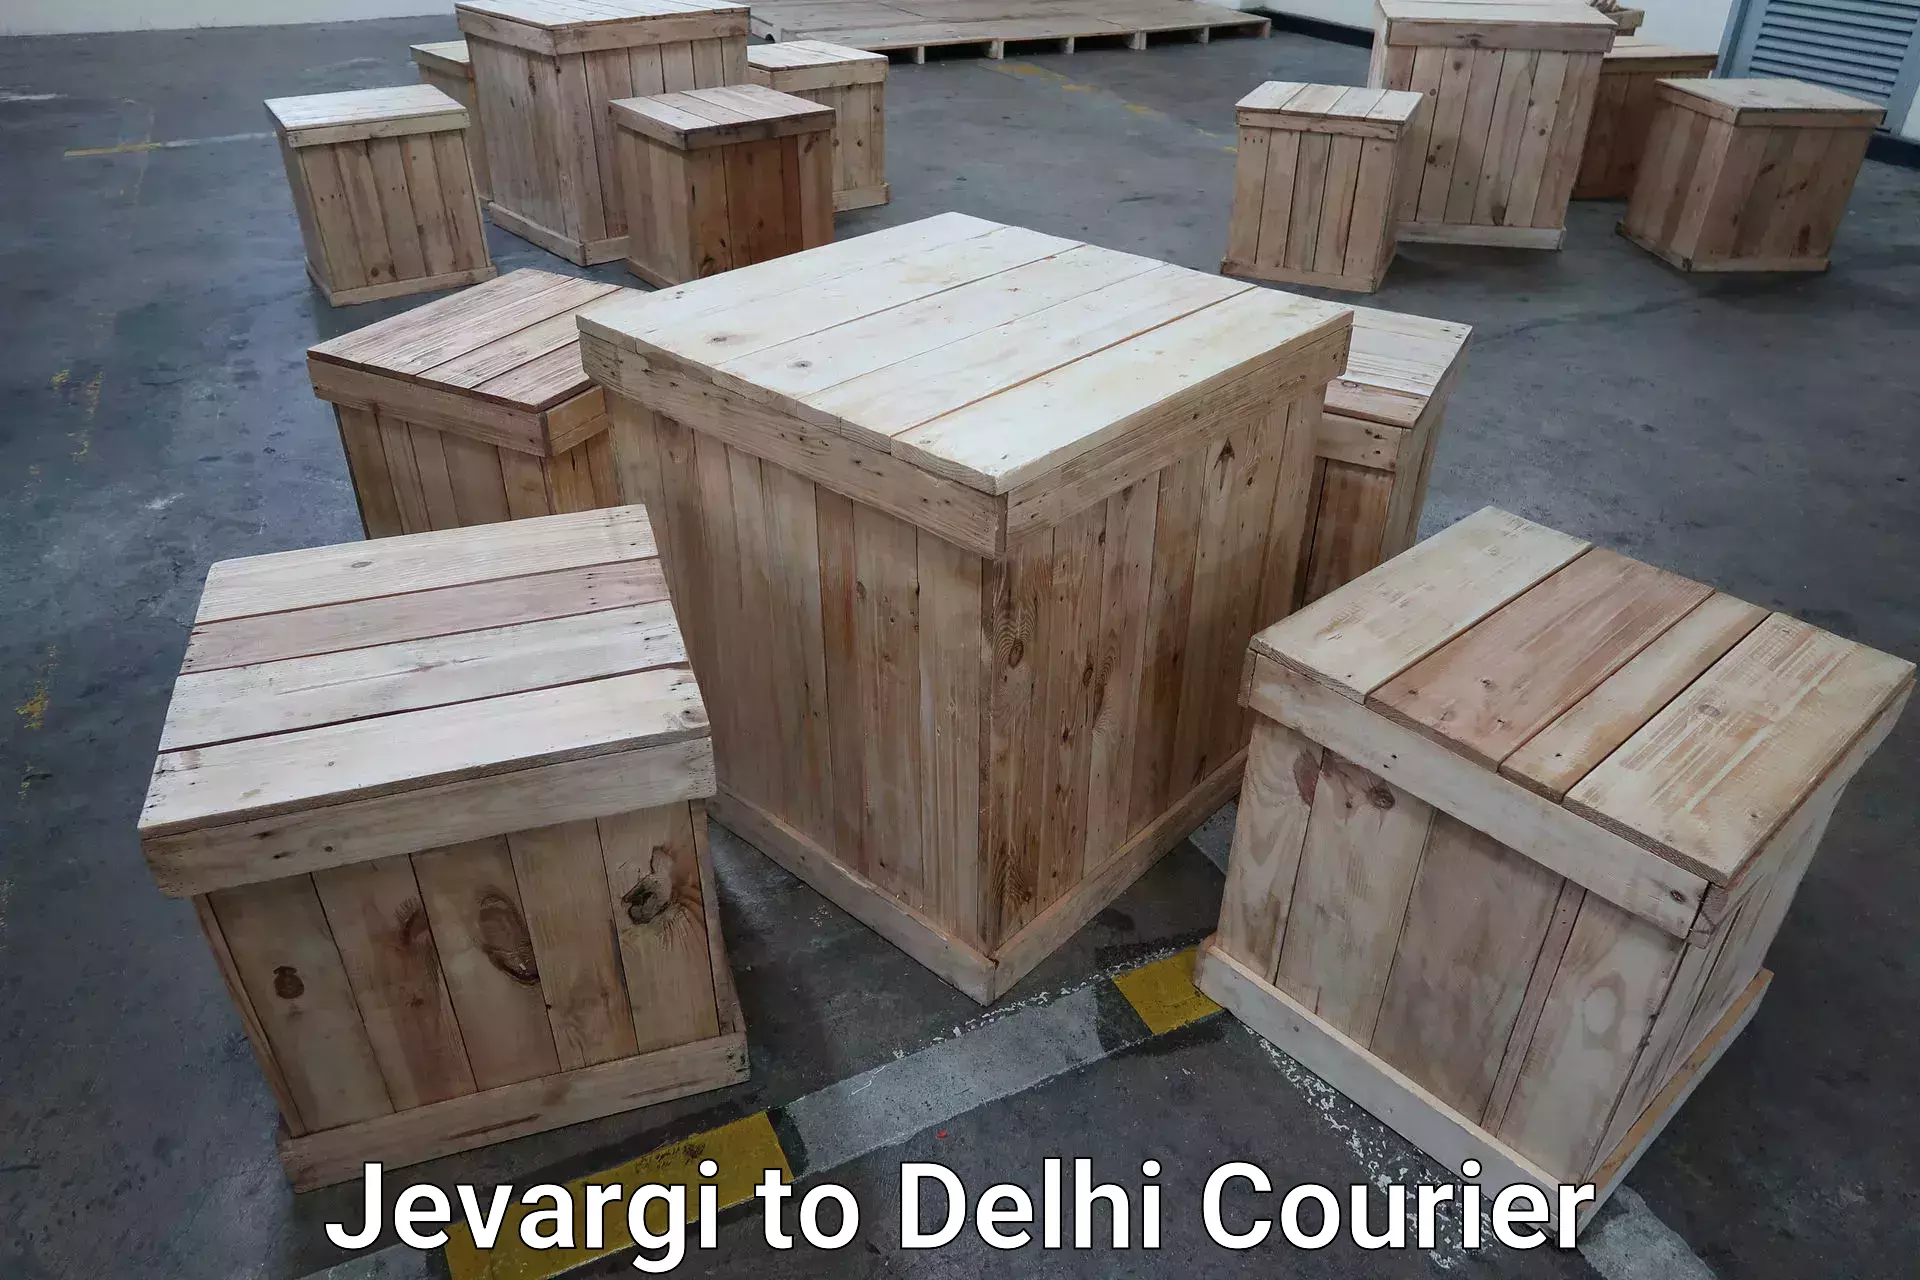 Door-to-door baggage service Jevargi to Delhi